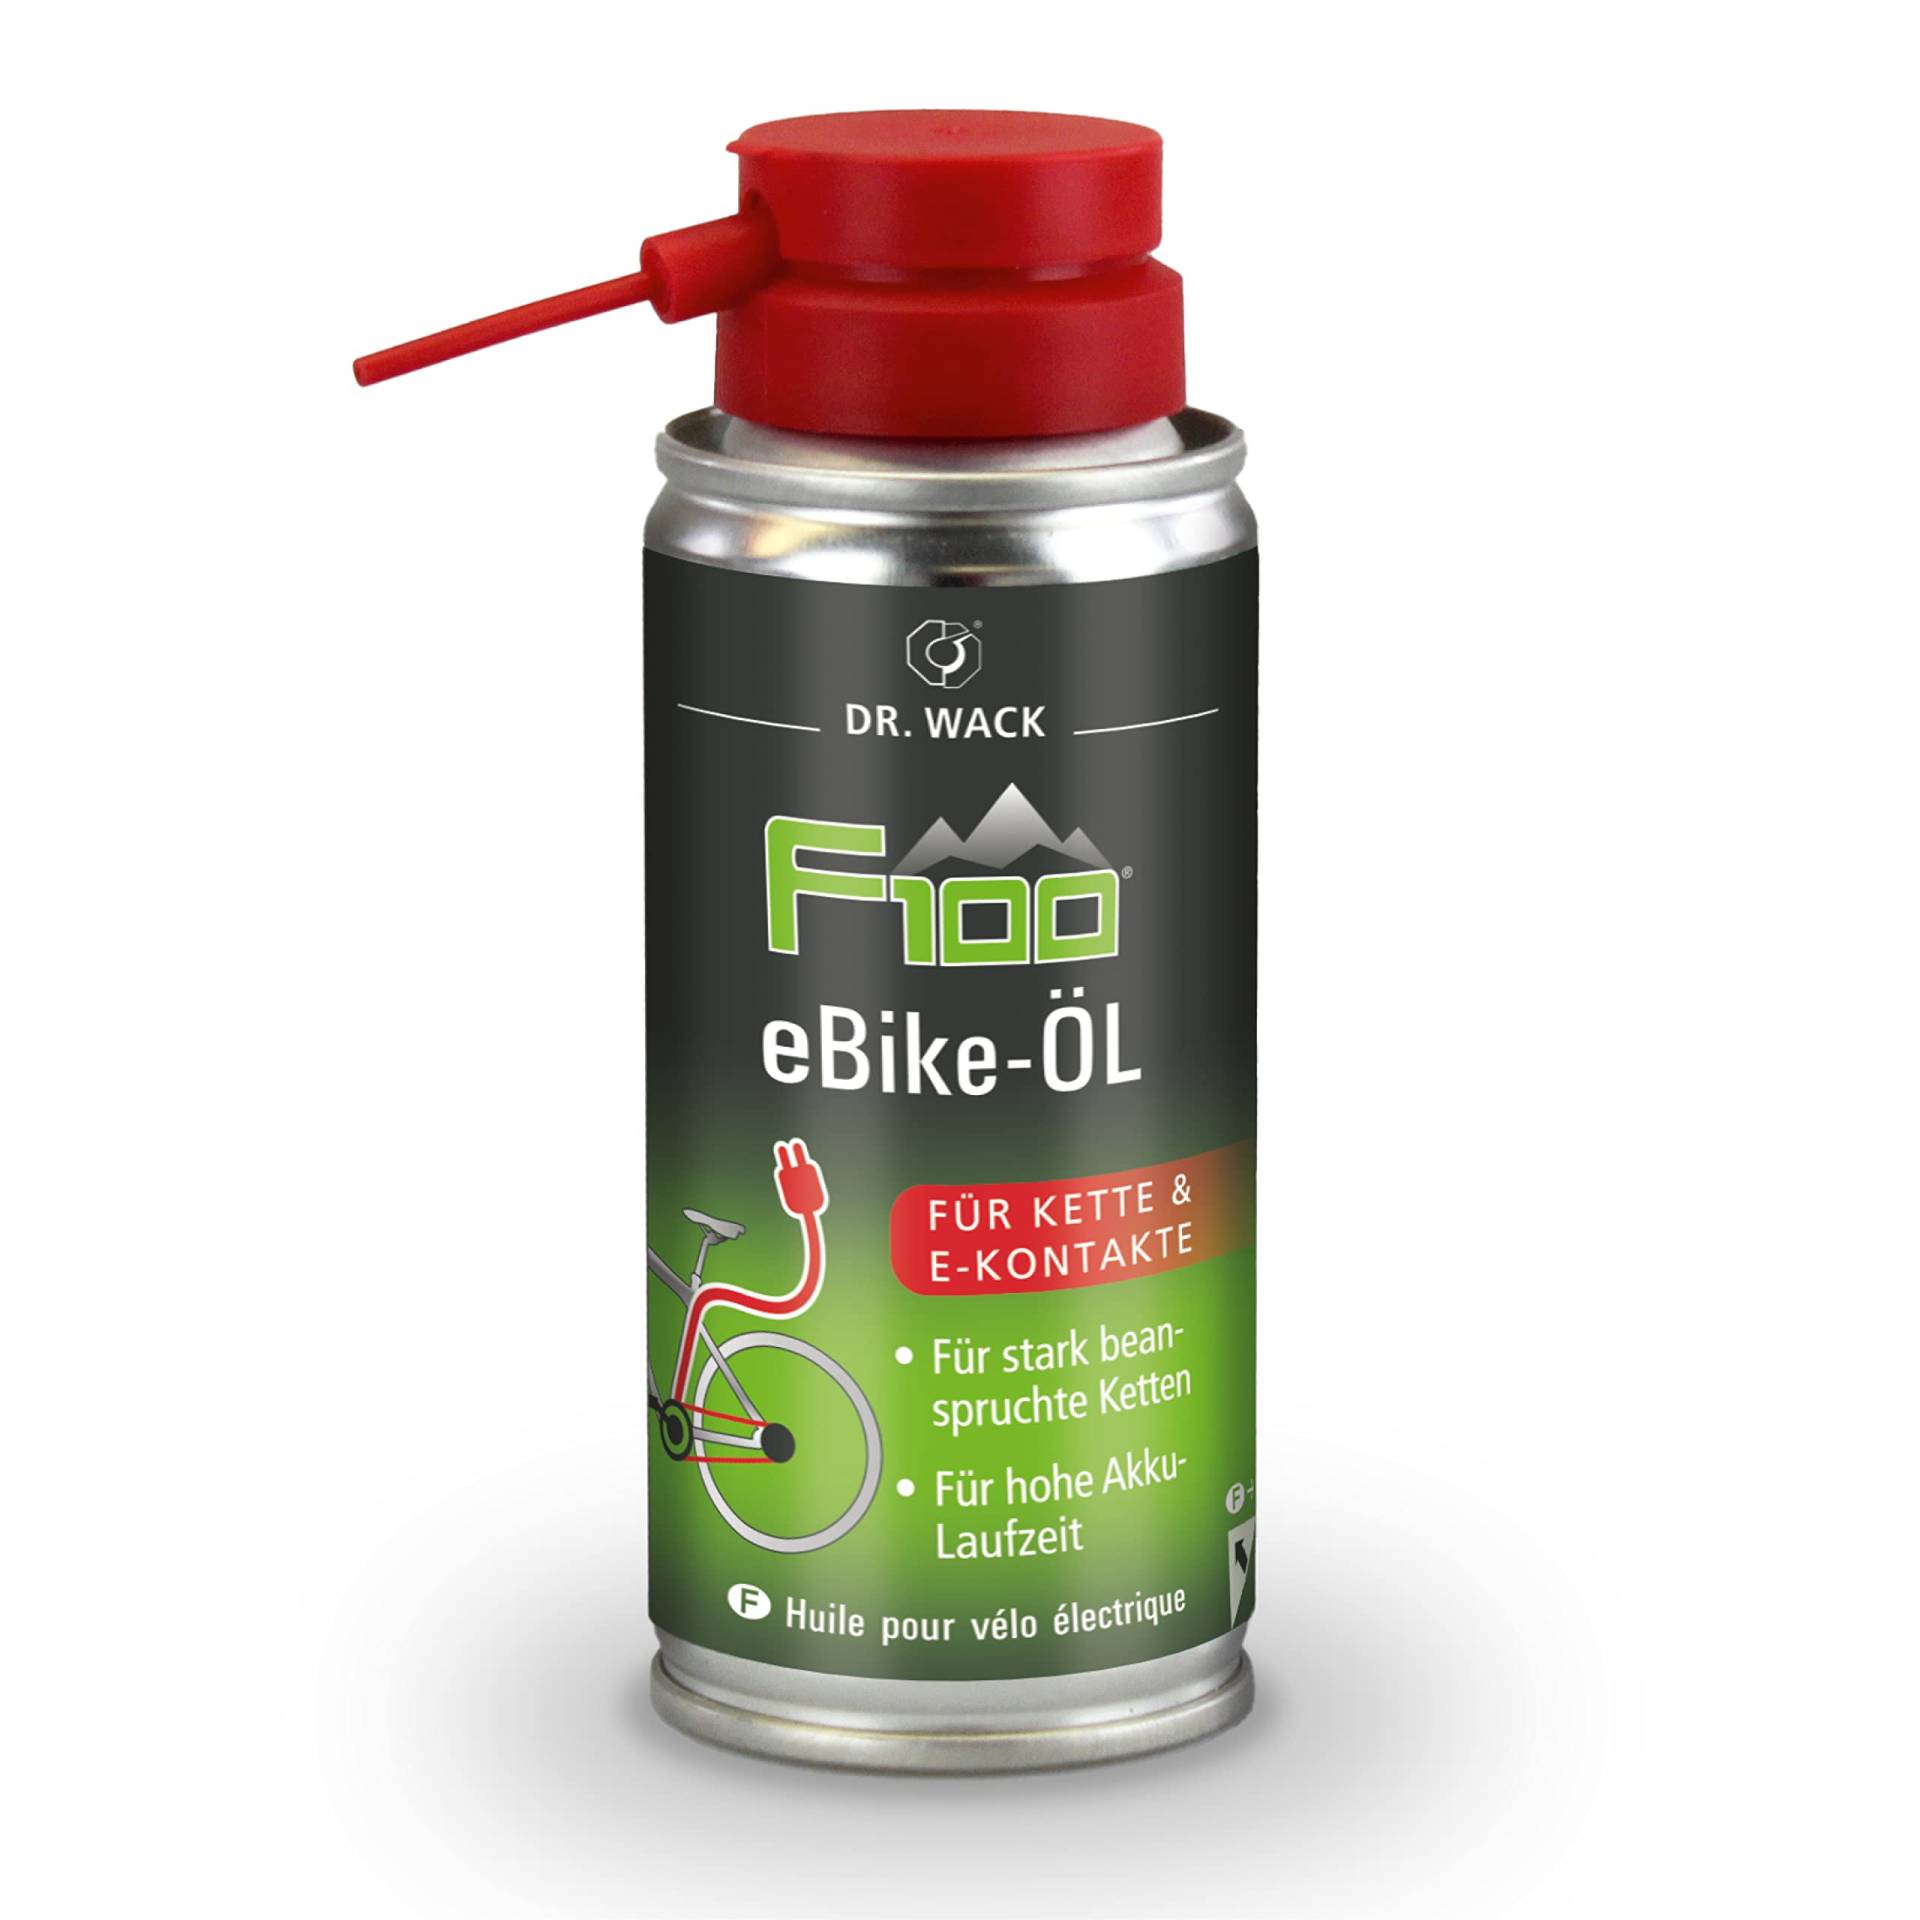 Dr. Wack - F100 eBike-Öl – Spray 100 ml I Premium Fahrrad Ketten- & Kontaktöl für weniger Reibung & Verschleiß I Kettenöl für E-Bike I Hochwertige Fahrradpflege – Made in Germany von DR. WACK